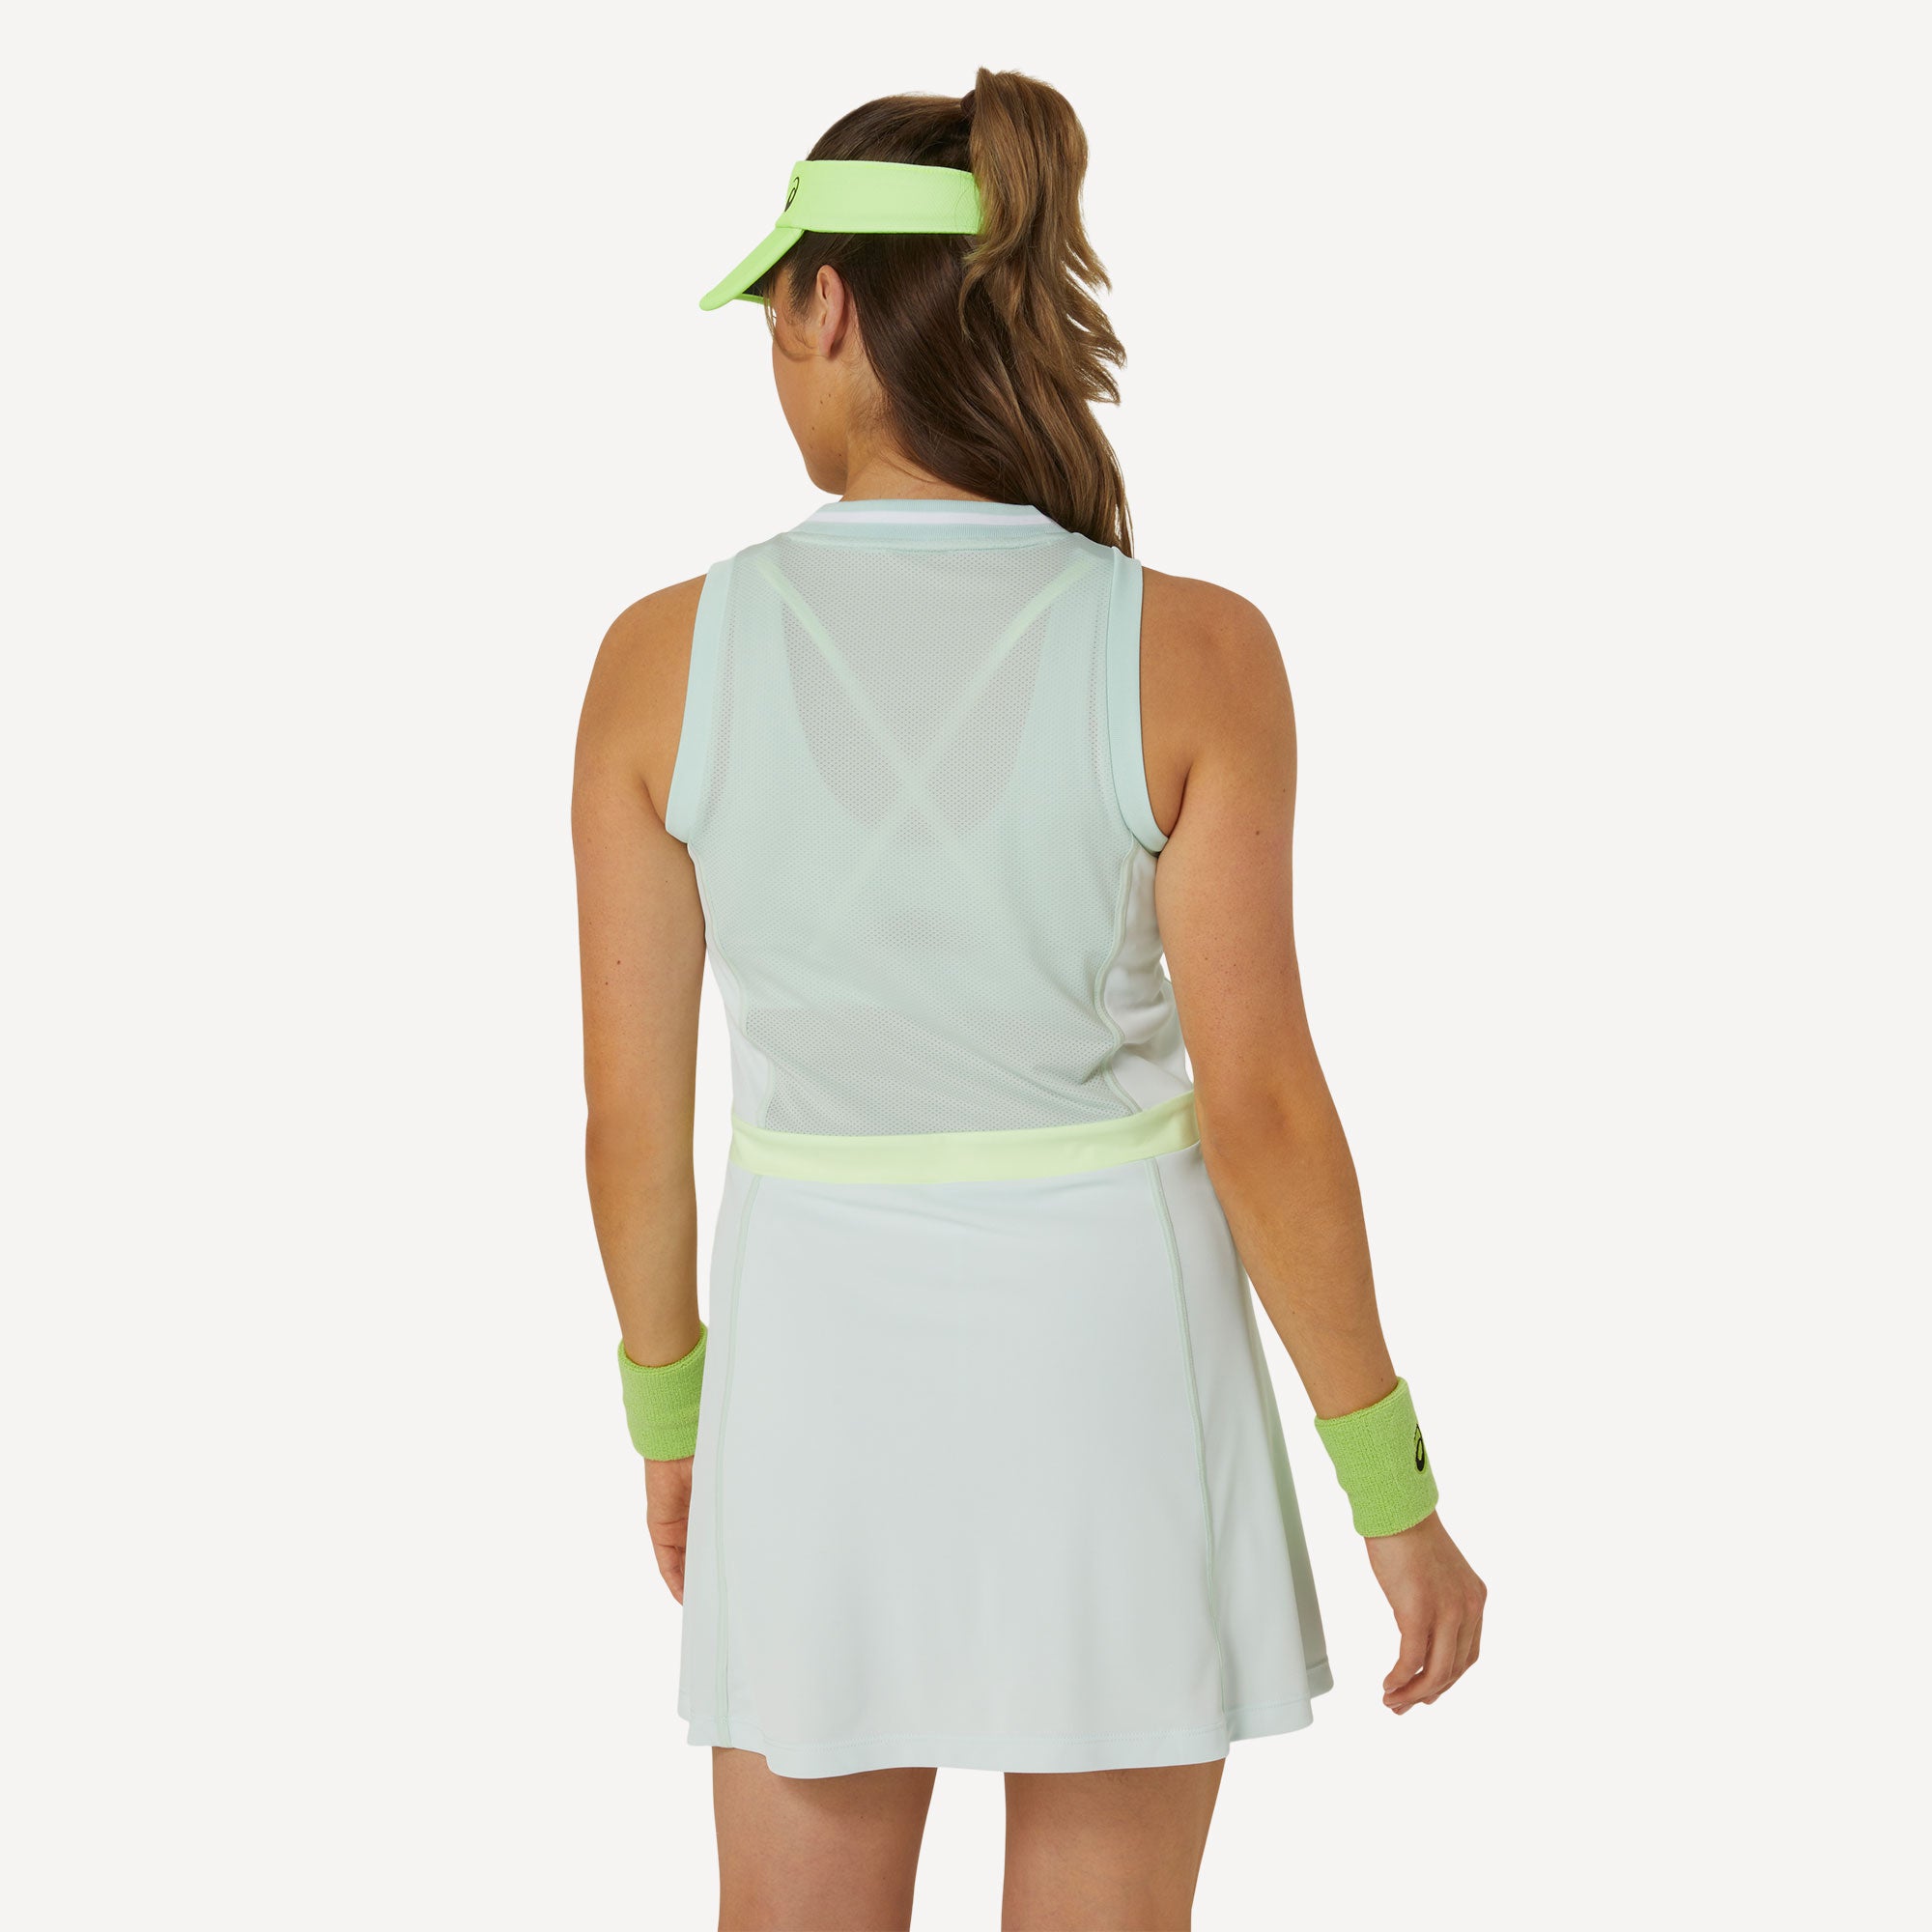 ASICS Match Women's Tennis Dress - Green (2)